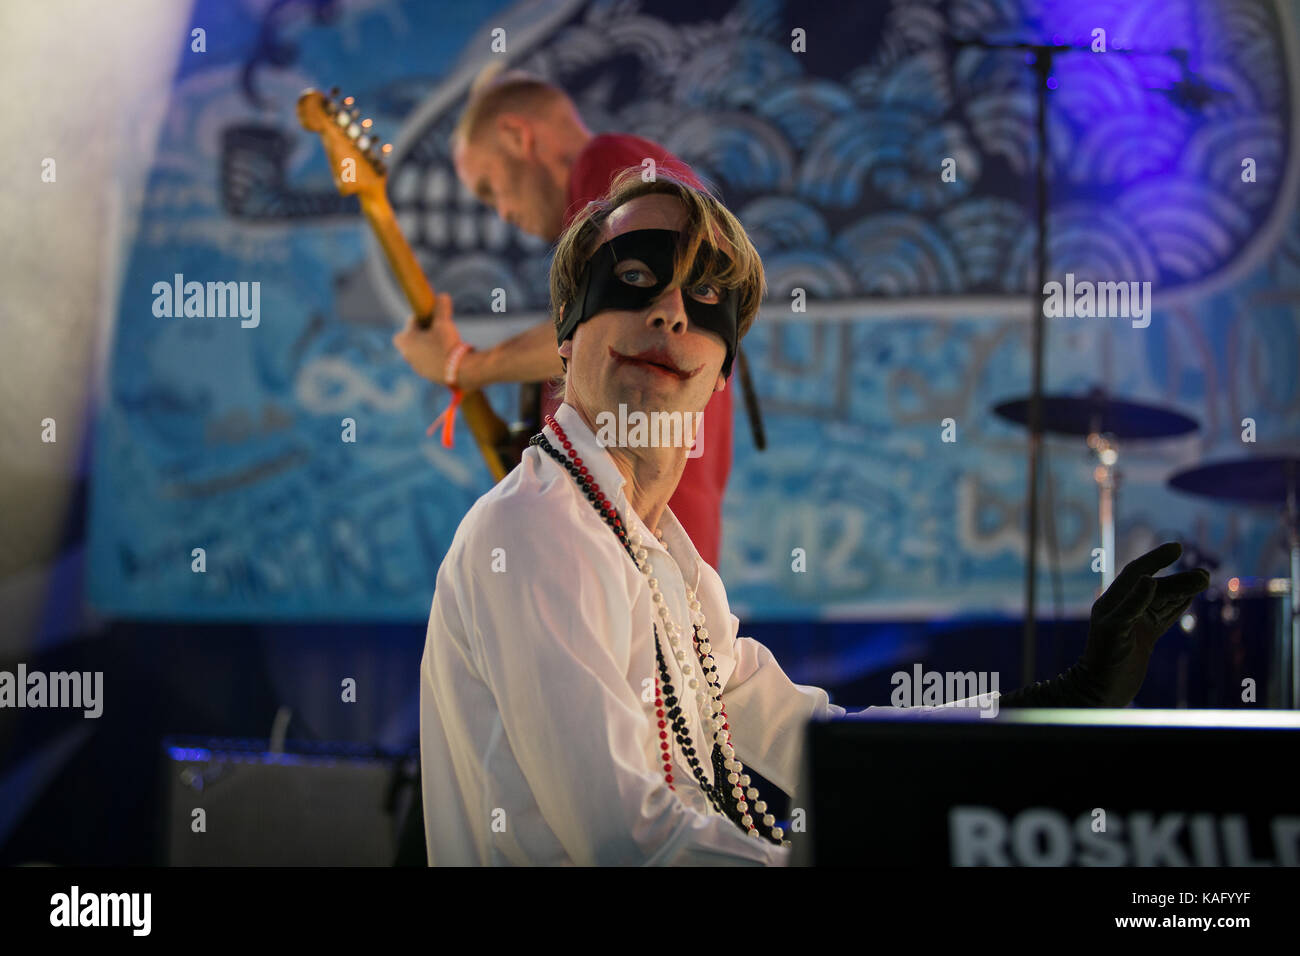 La svedese indie rock band di Bob Hund esegue un concerto dal vivo all'Avalon Stage presso il Danish music festival Roskilde Festival 2015. Qui la cantante Thomas Öberg è raffigurato dal vivo sul palco. Danimarca, 01/07 2015. Foto Stock